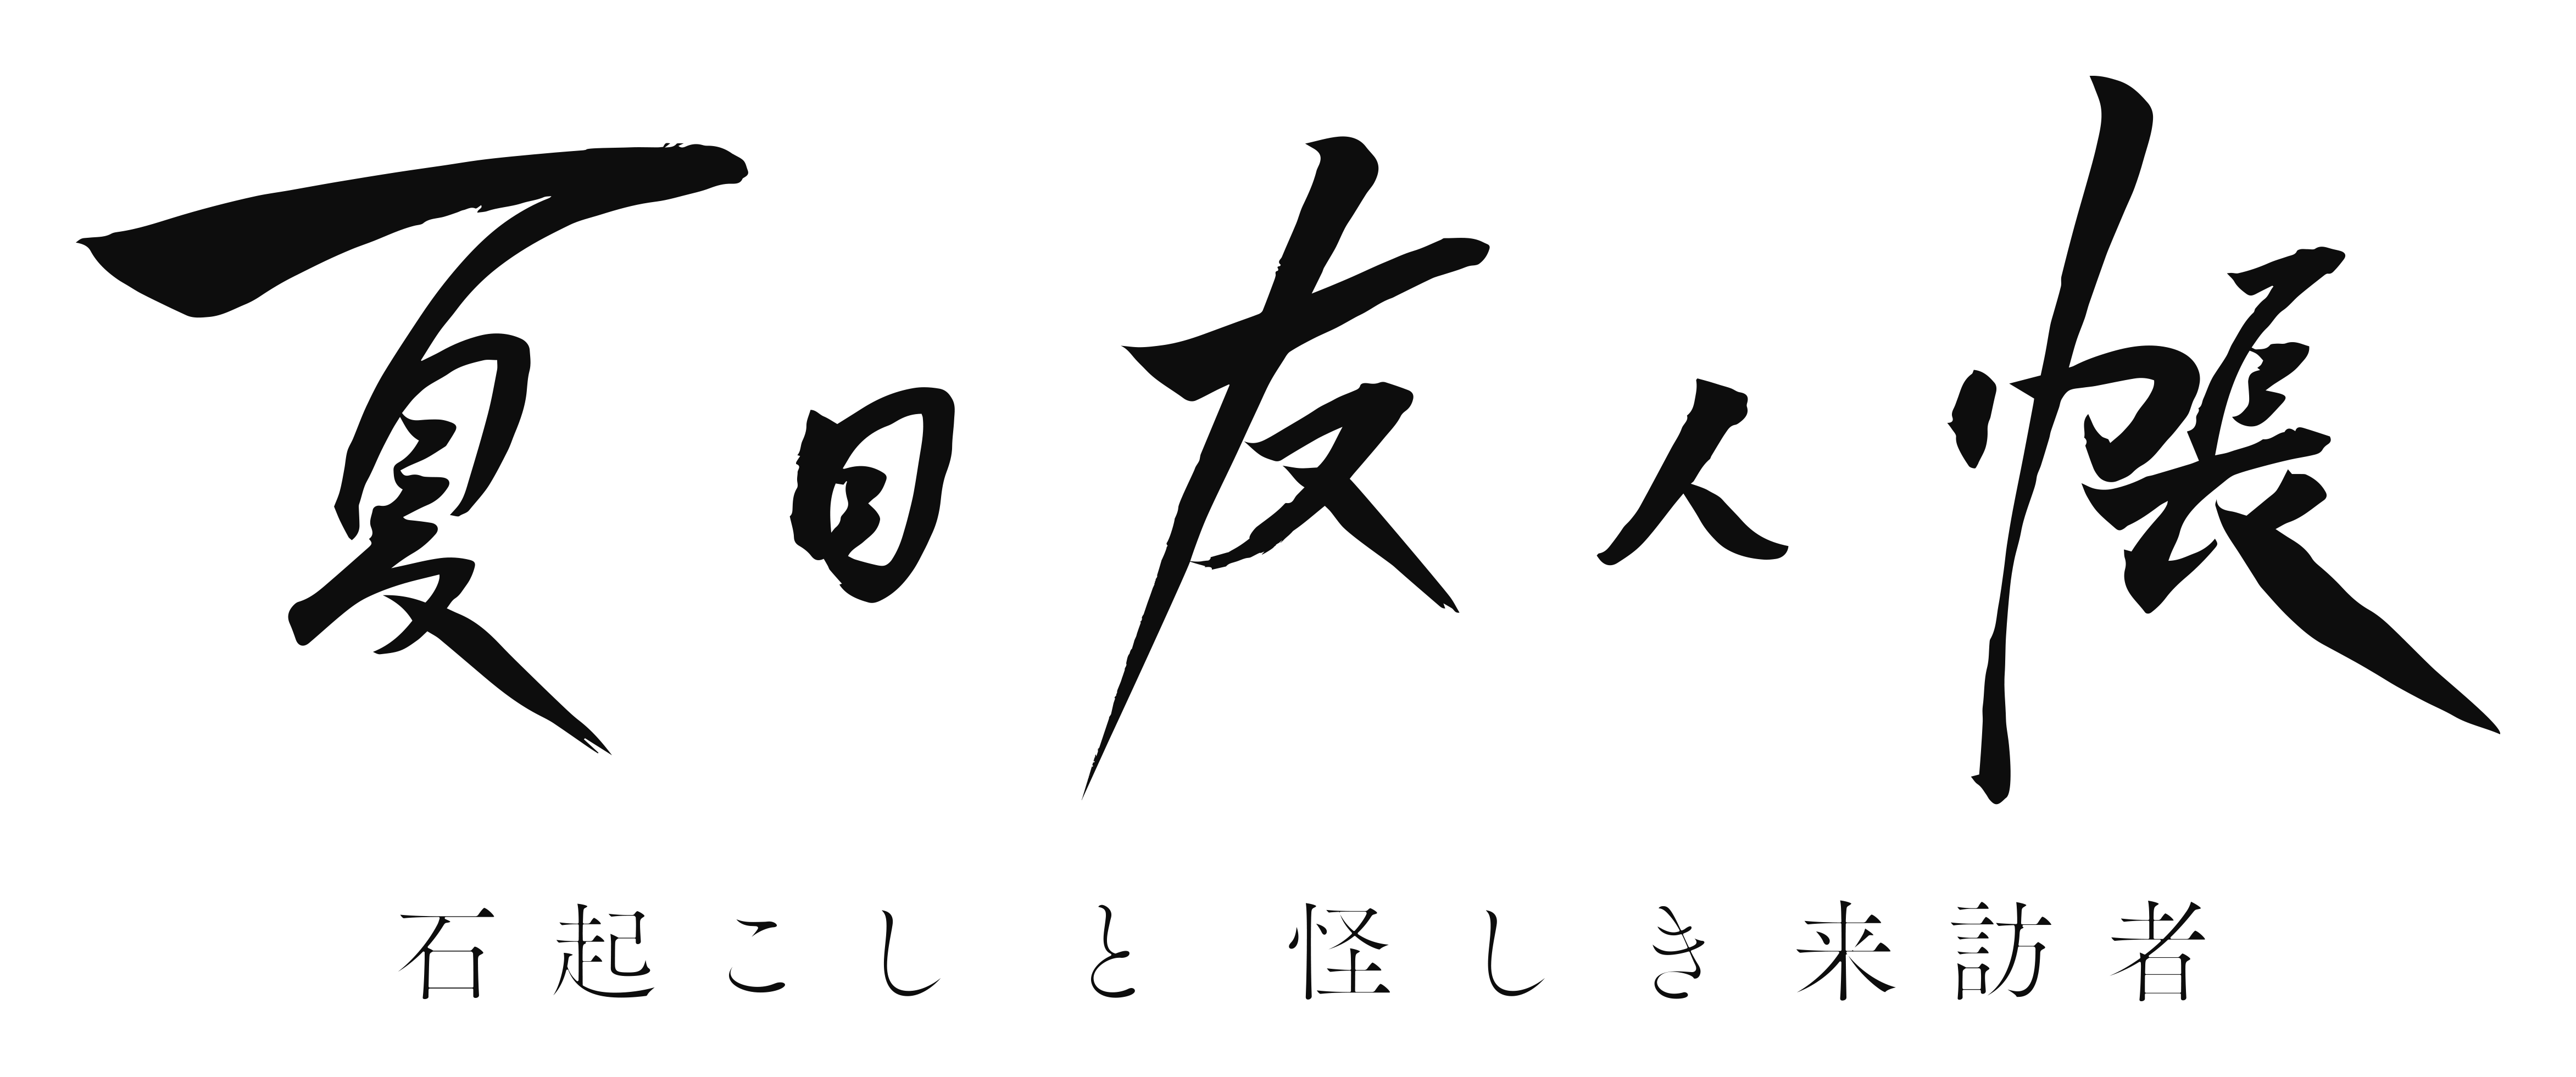 夏目友人帳 石起こしと怪しき来訪者 Blu Ray Dvdが5月26日 水 に発売決定 株式会社アニプレックスのプレスリリース